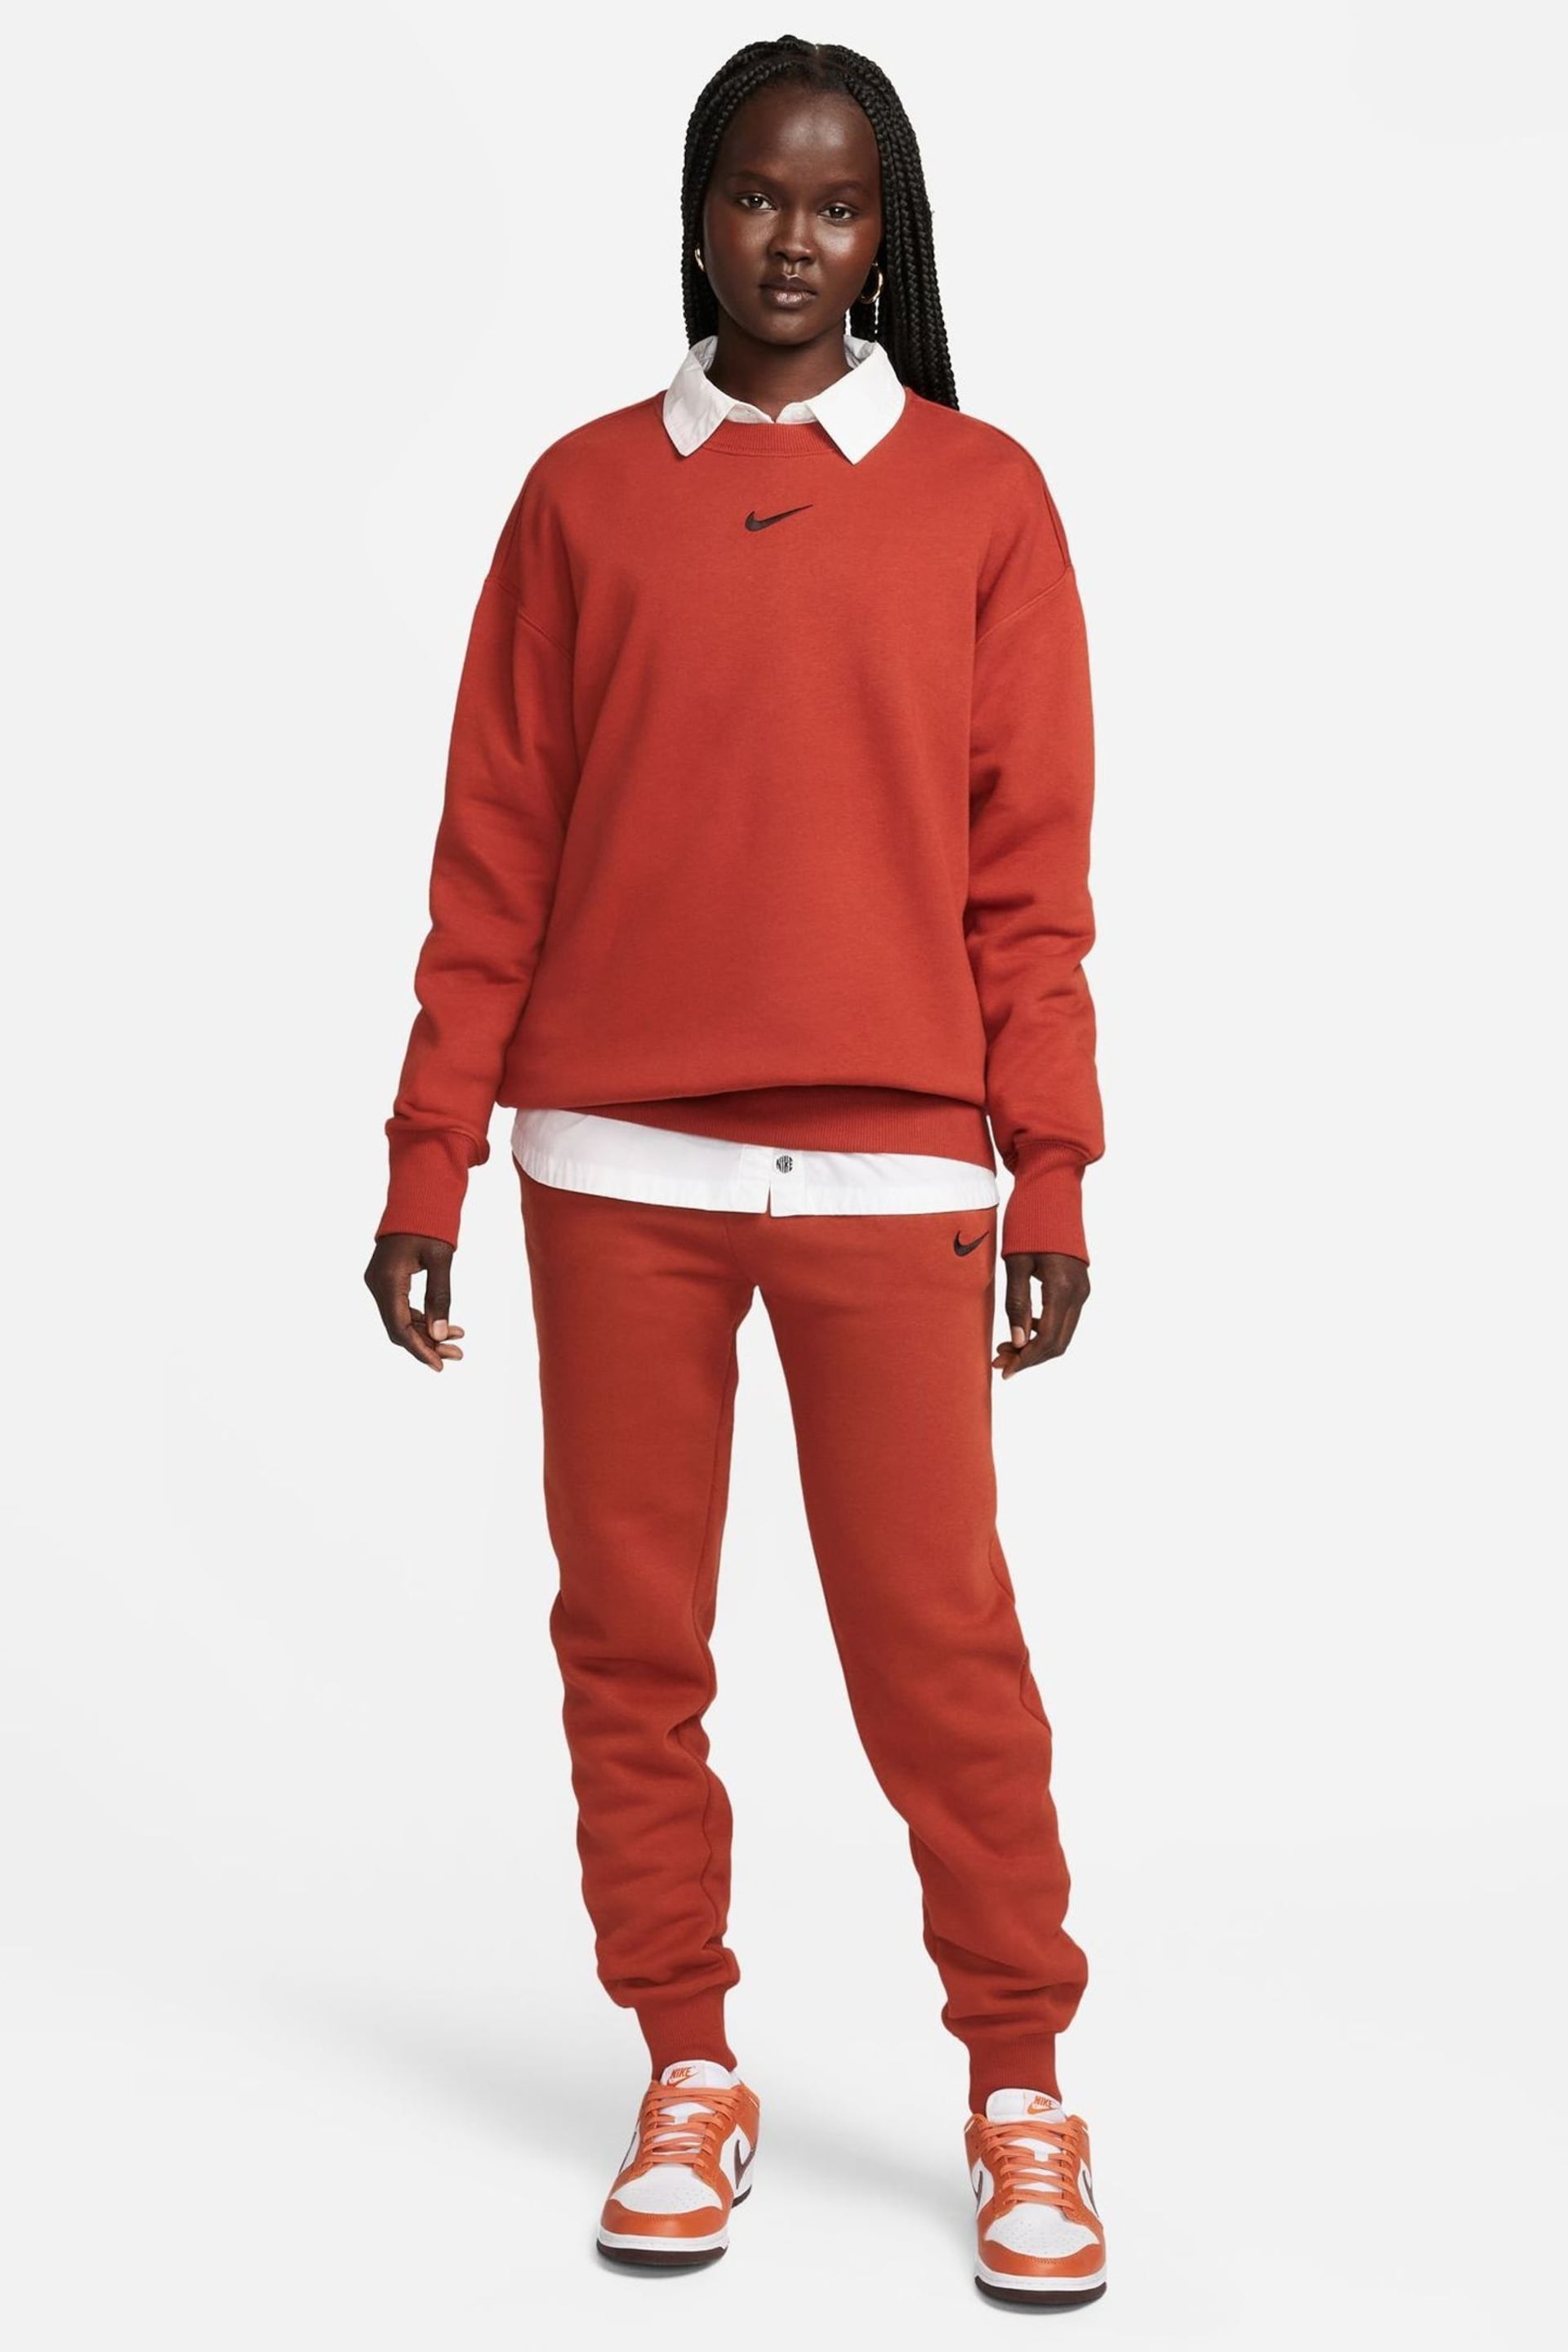 Nike Orange Phoenix Fleece Oersize Sweatshirt - Image 3 of 7